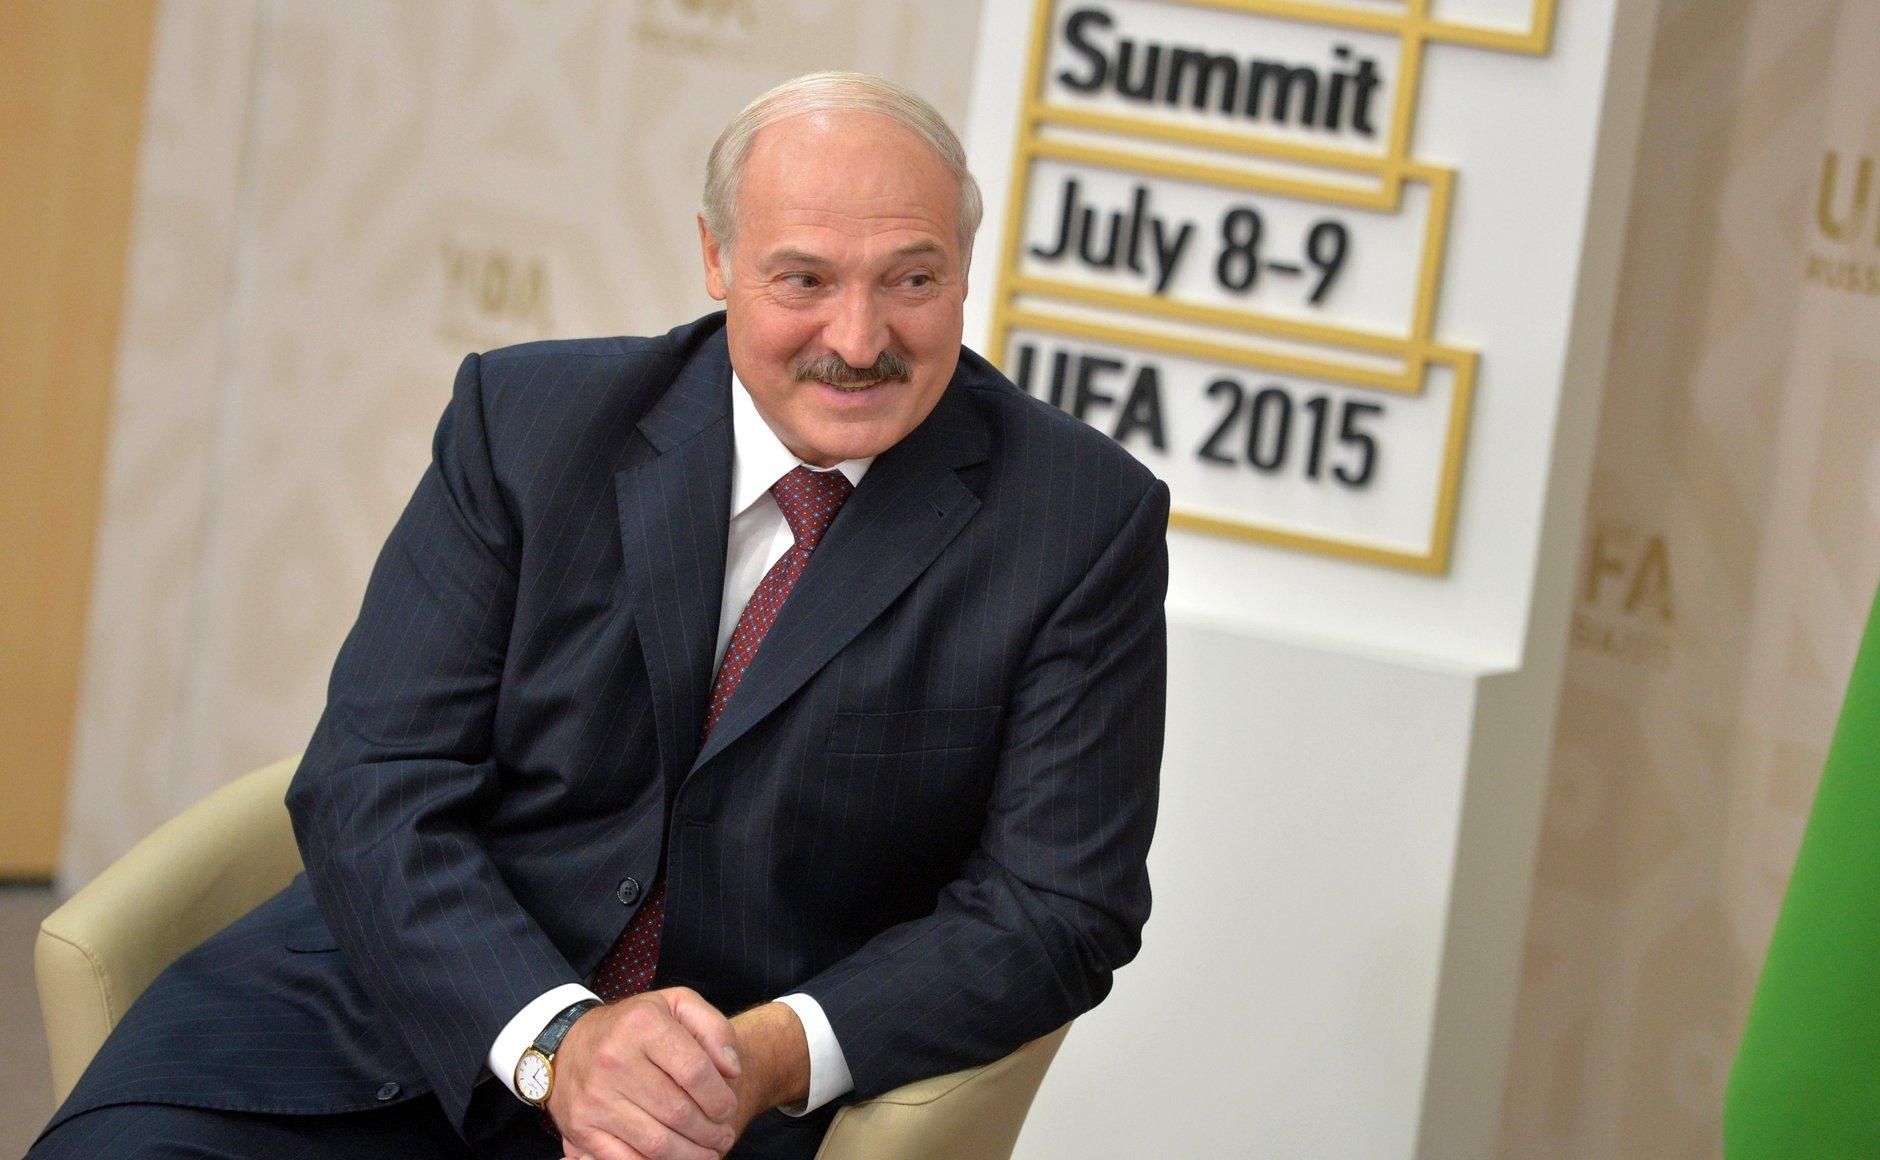 Съезжал с ума, – Лукашенко о своих ощущениях из-за COVID-19 в Беларуси